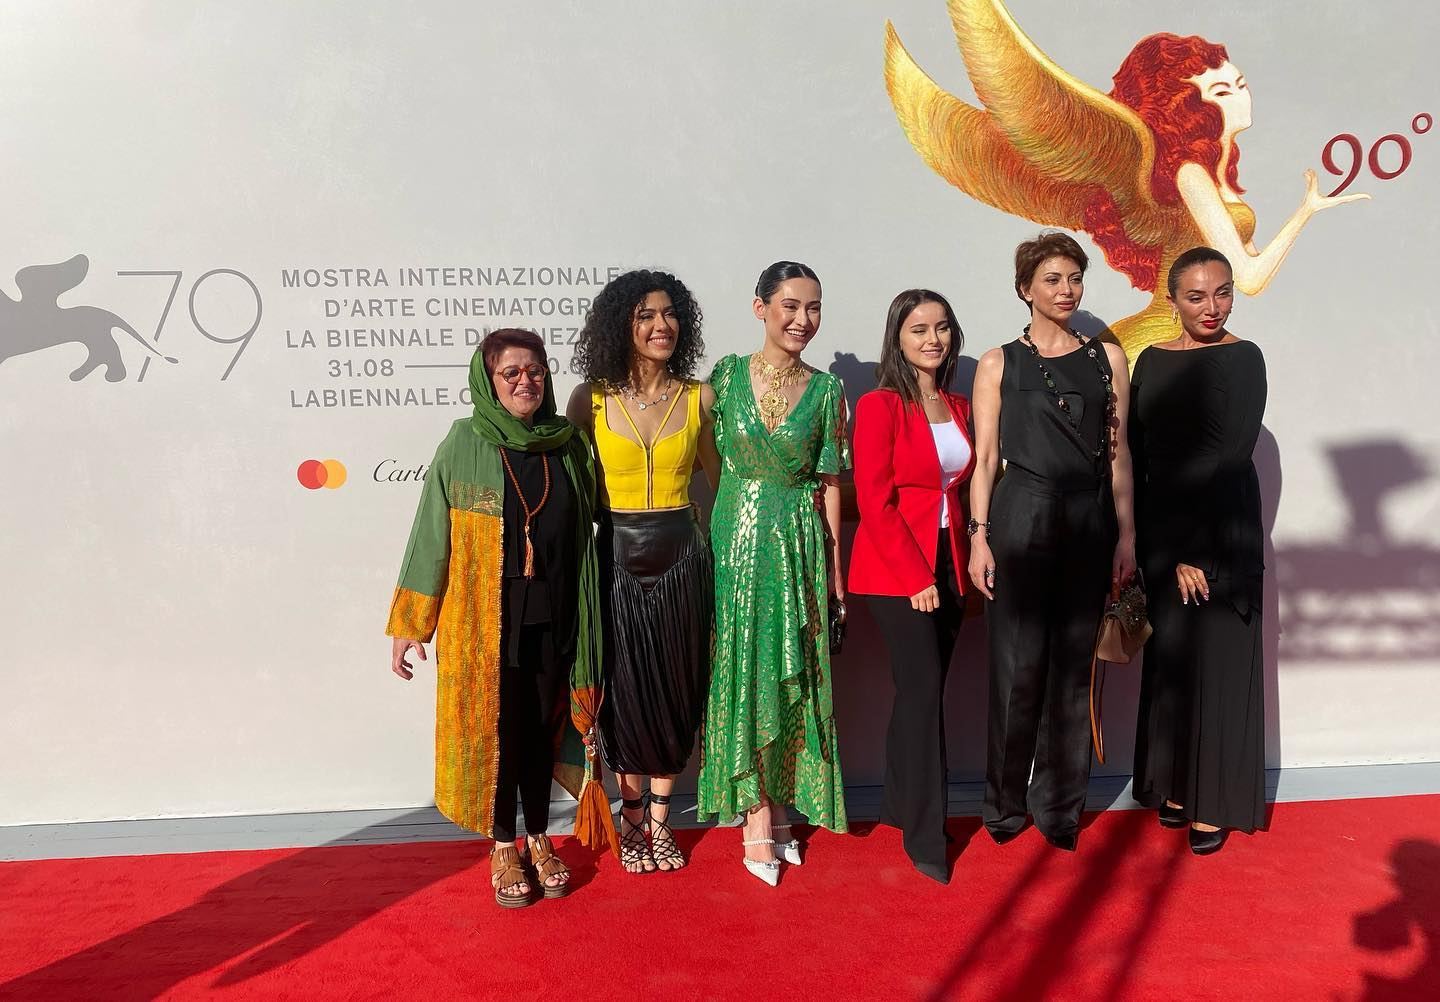 Тахмина Рафаэлла показала историю азербайджанской матери на Венецианском кинофестивале (ФОТО)